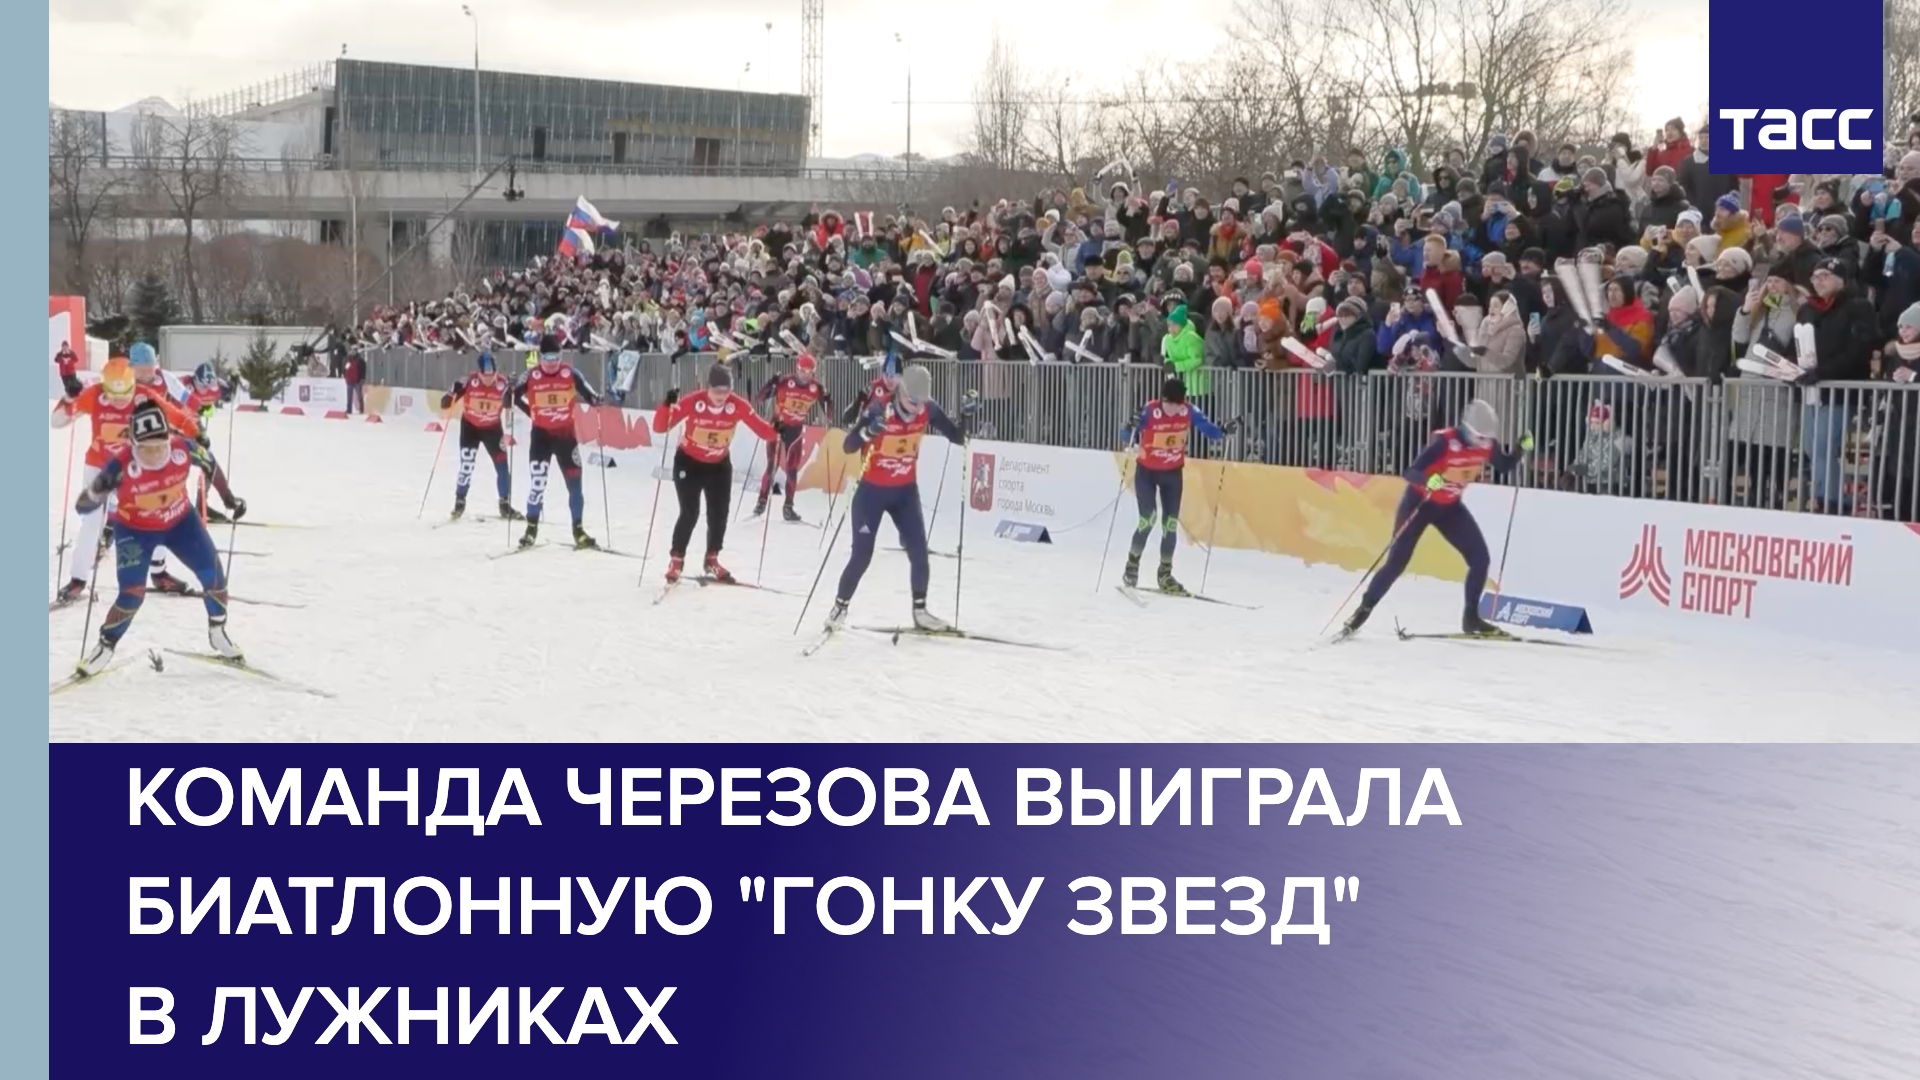 Команда Черезова выиграла биатлонную "Гонку звезд" в Лужниках